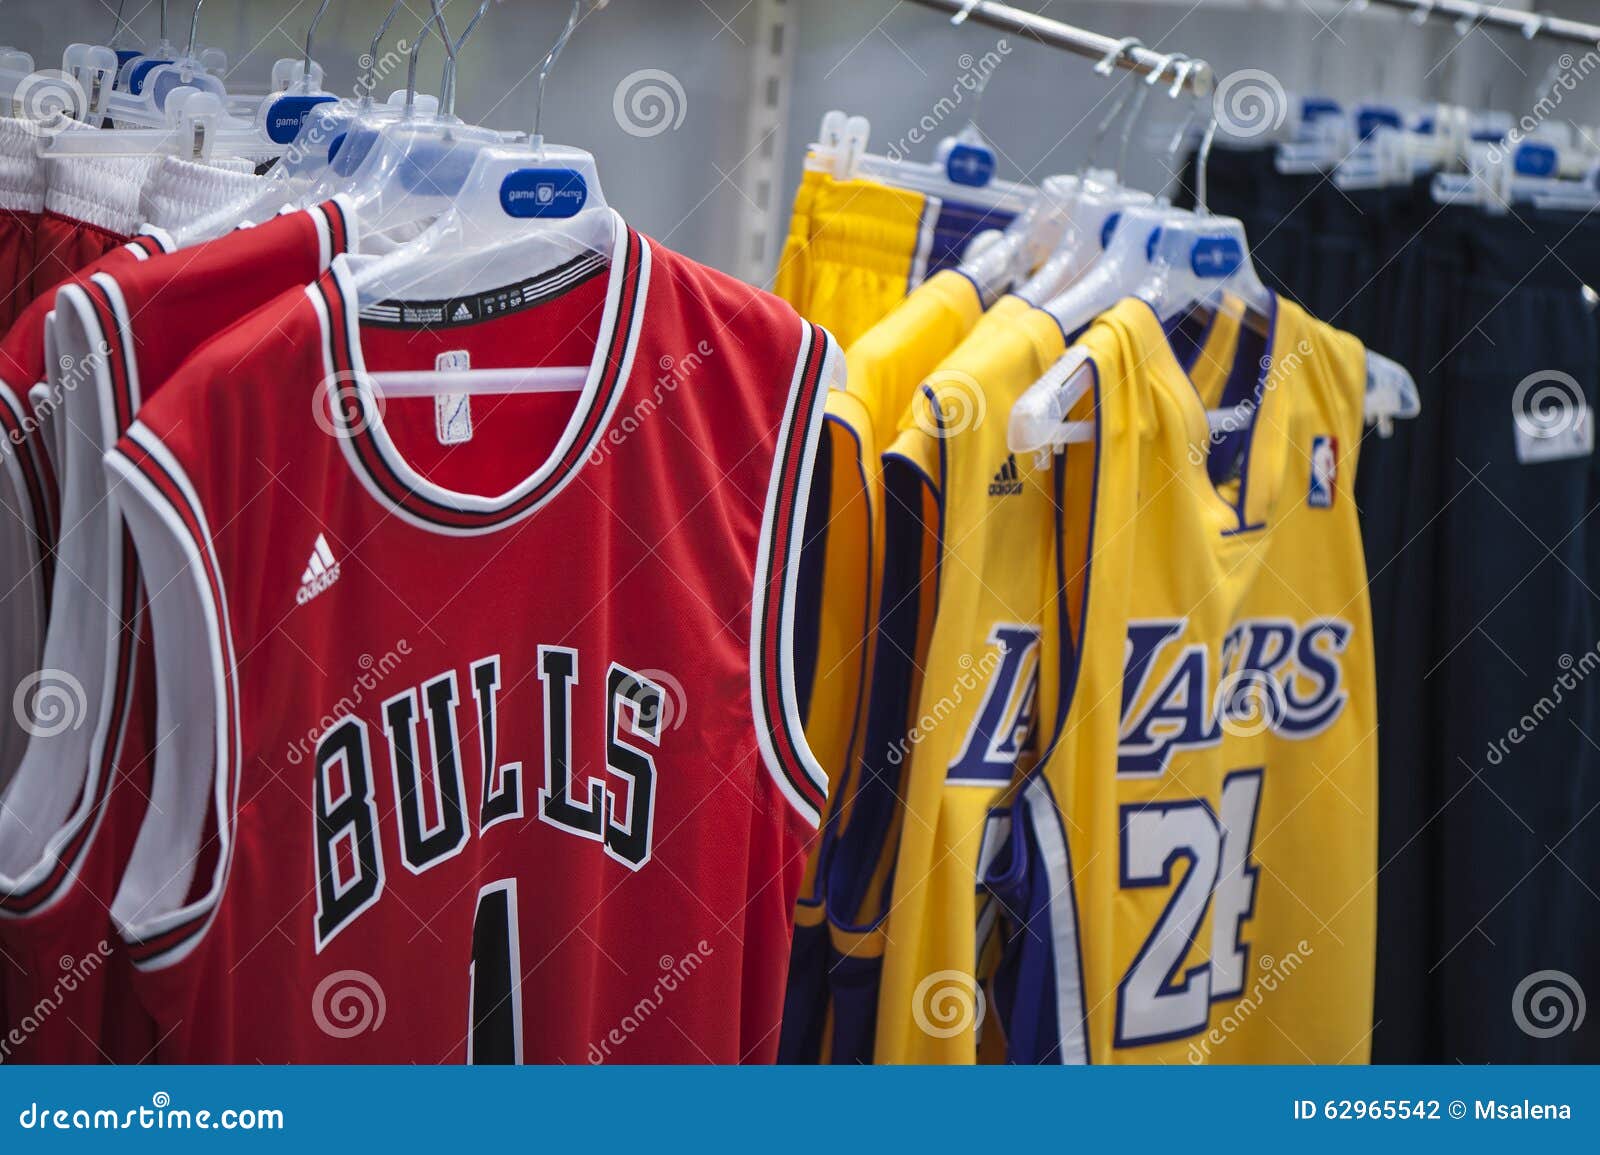 basketball shirts sale